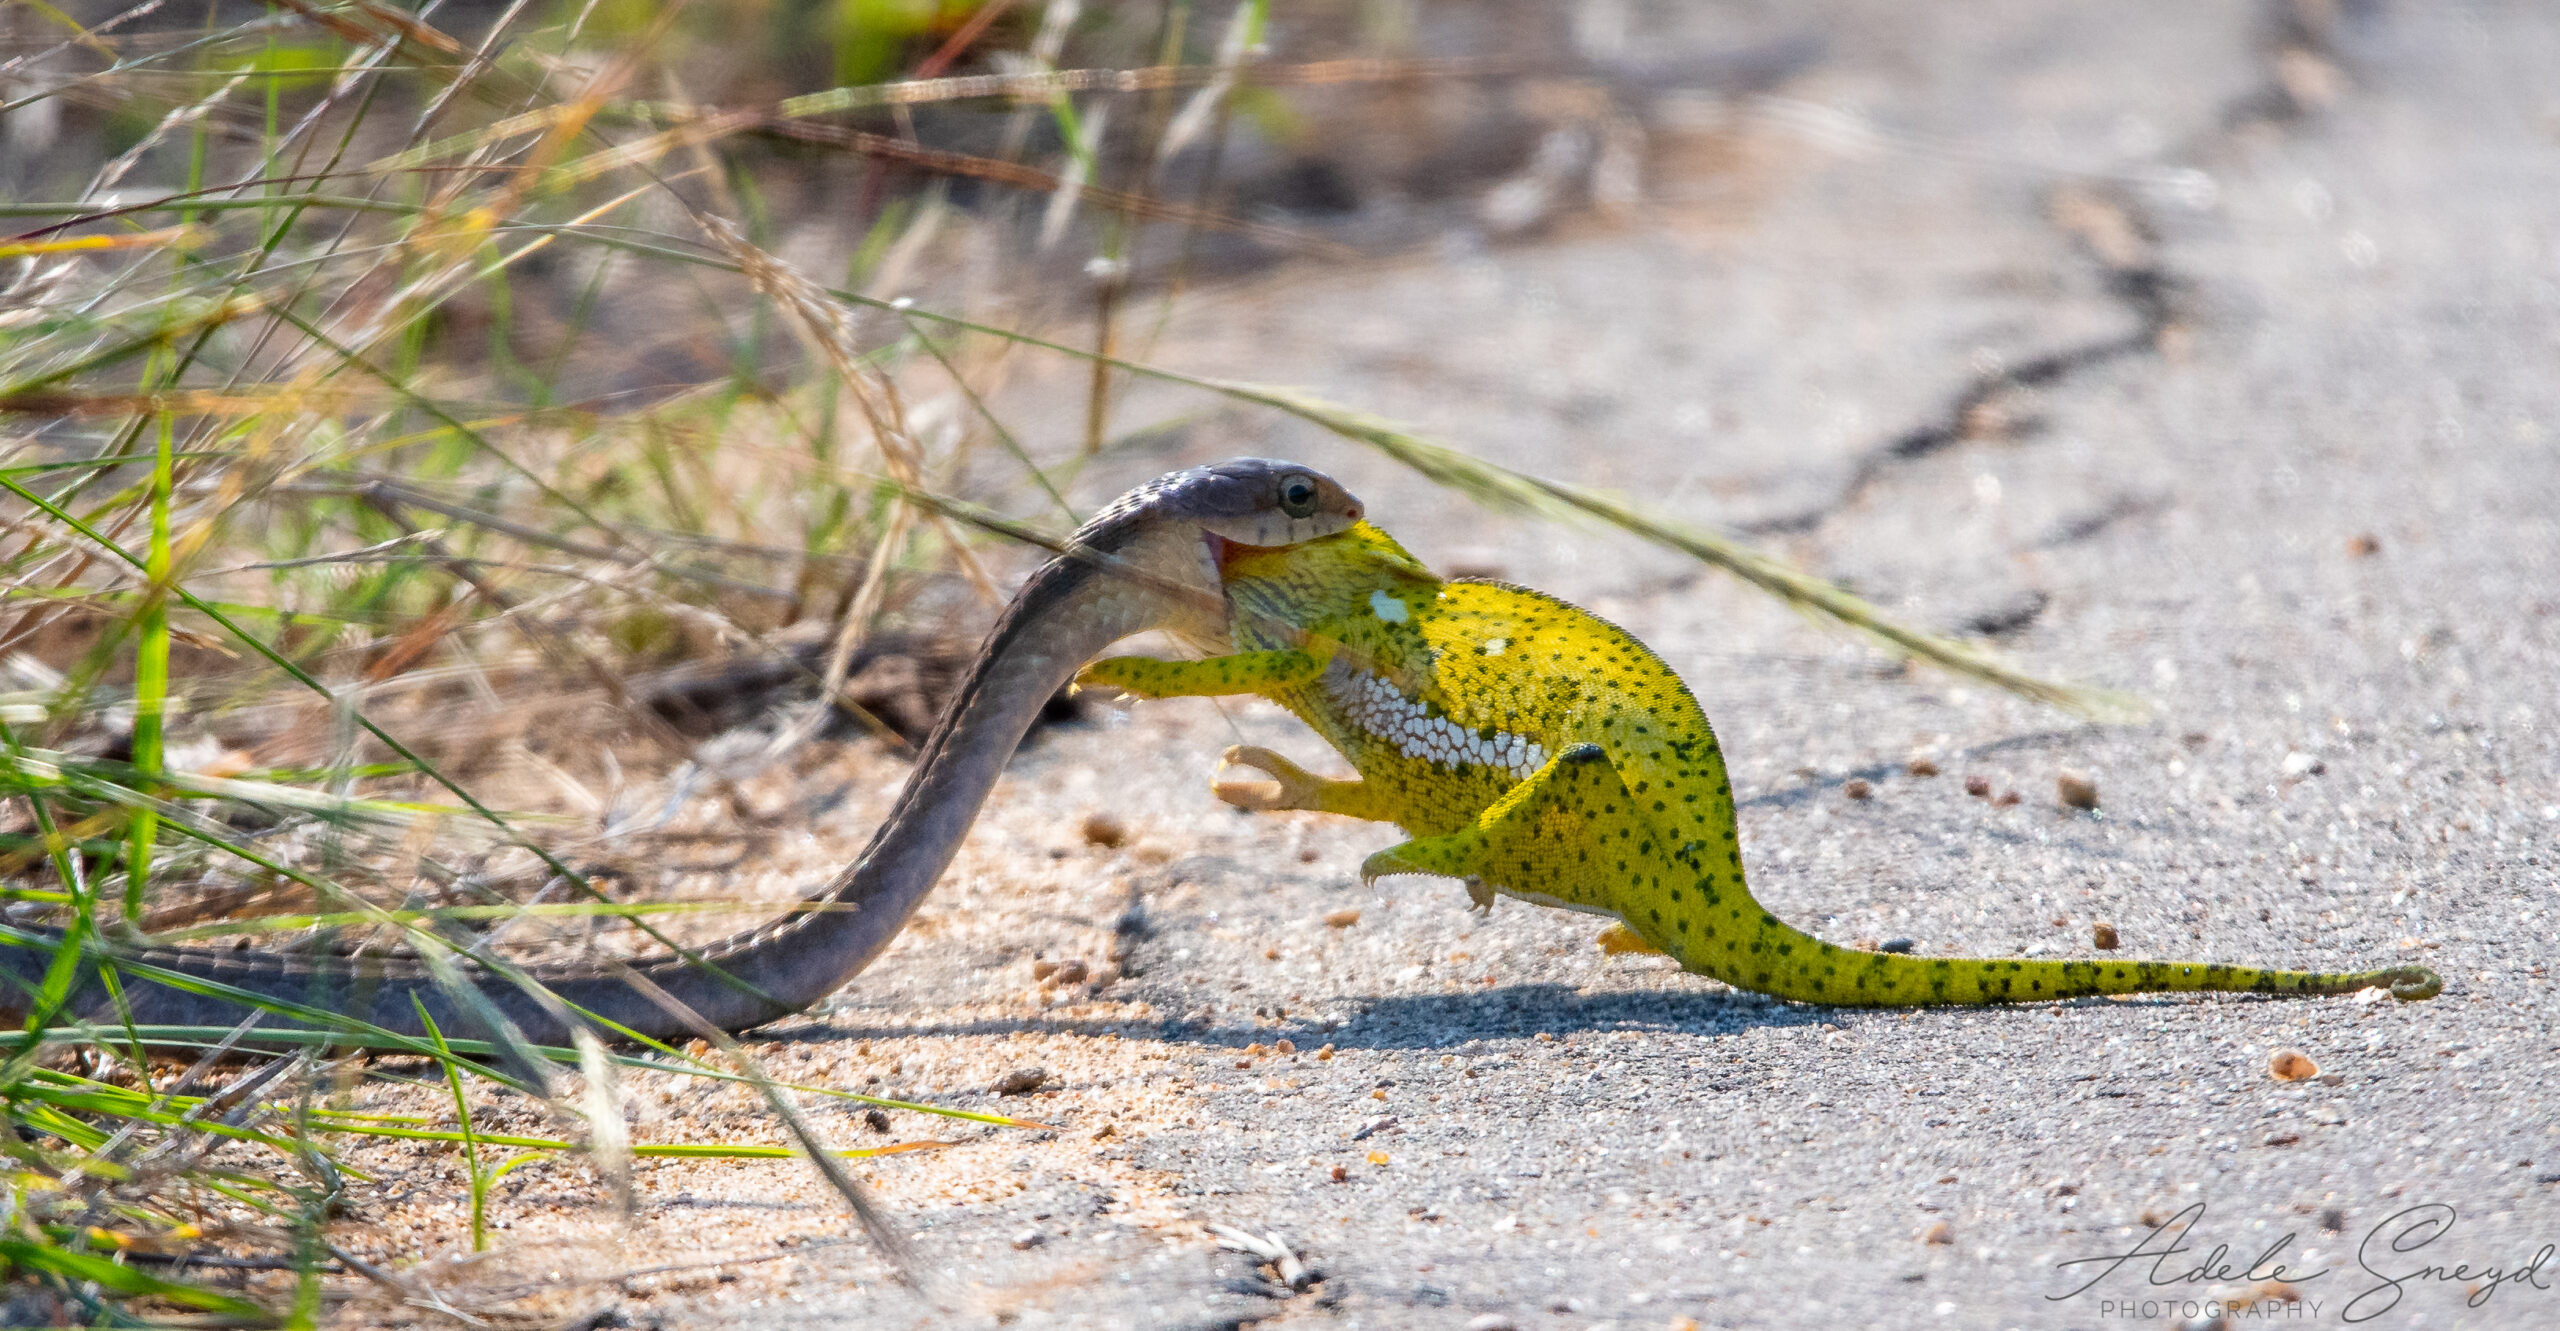 Relentless Snake Targets Helpless Chameleon on the Road